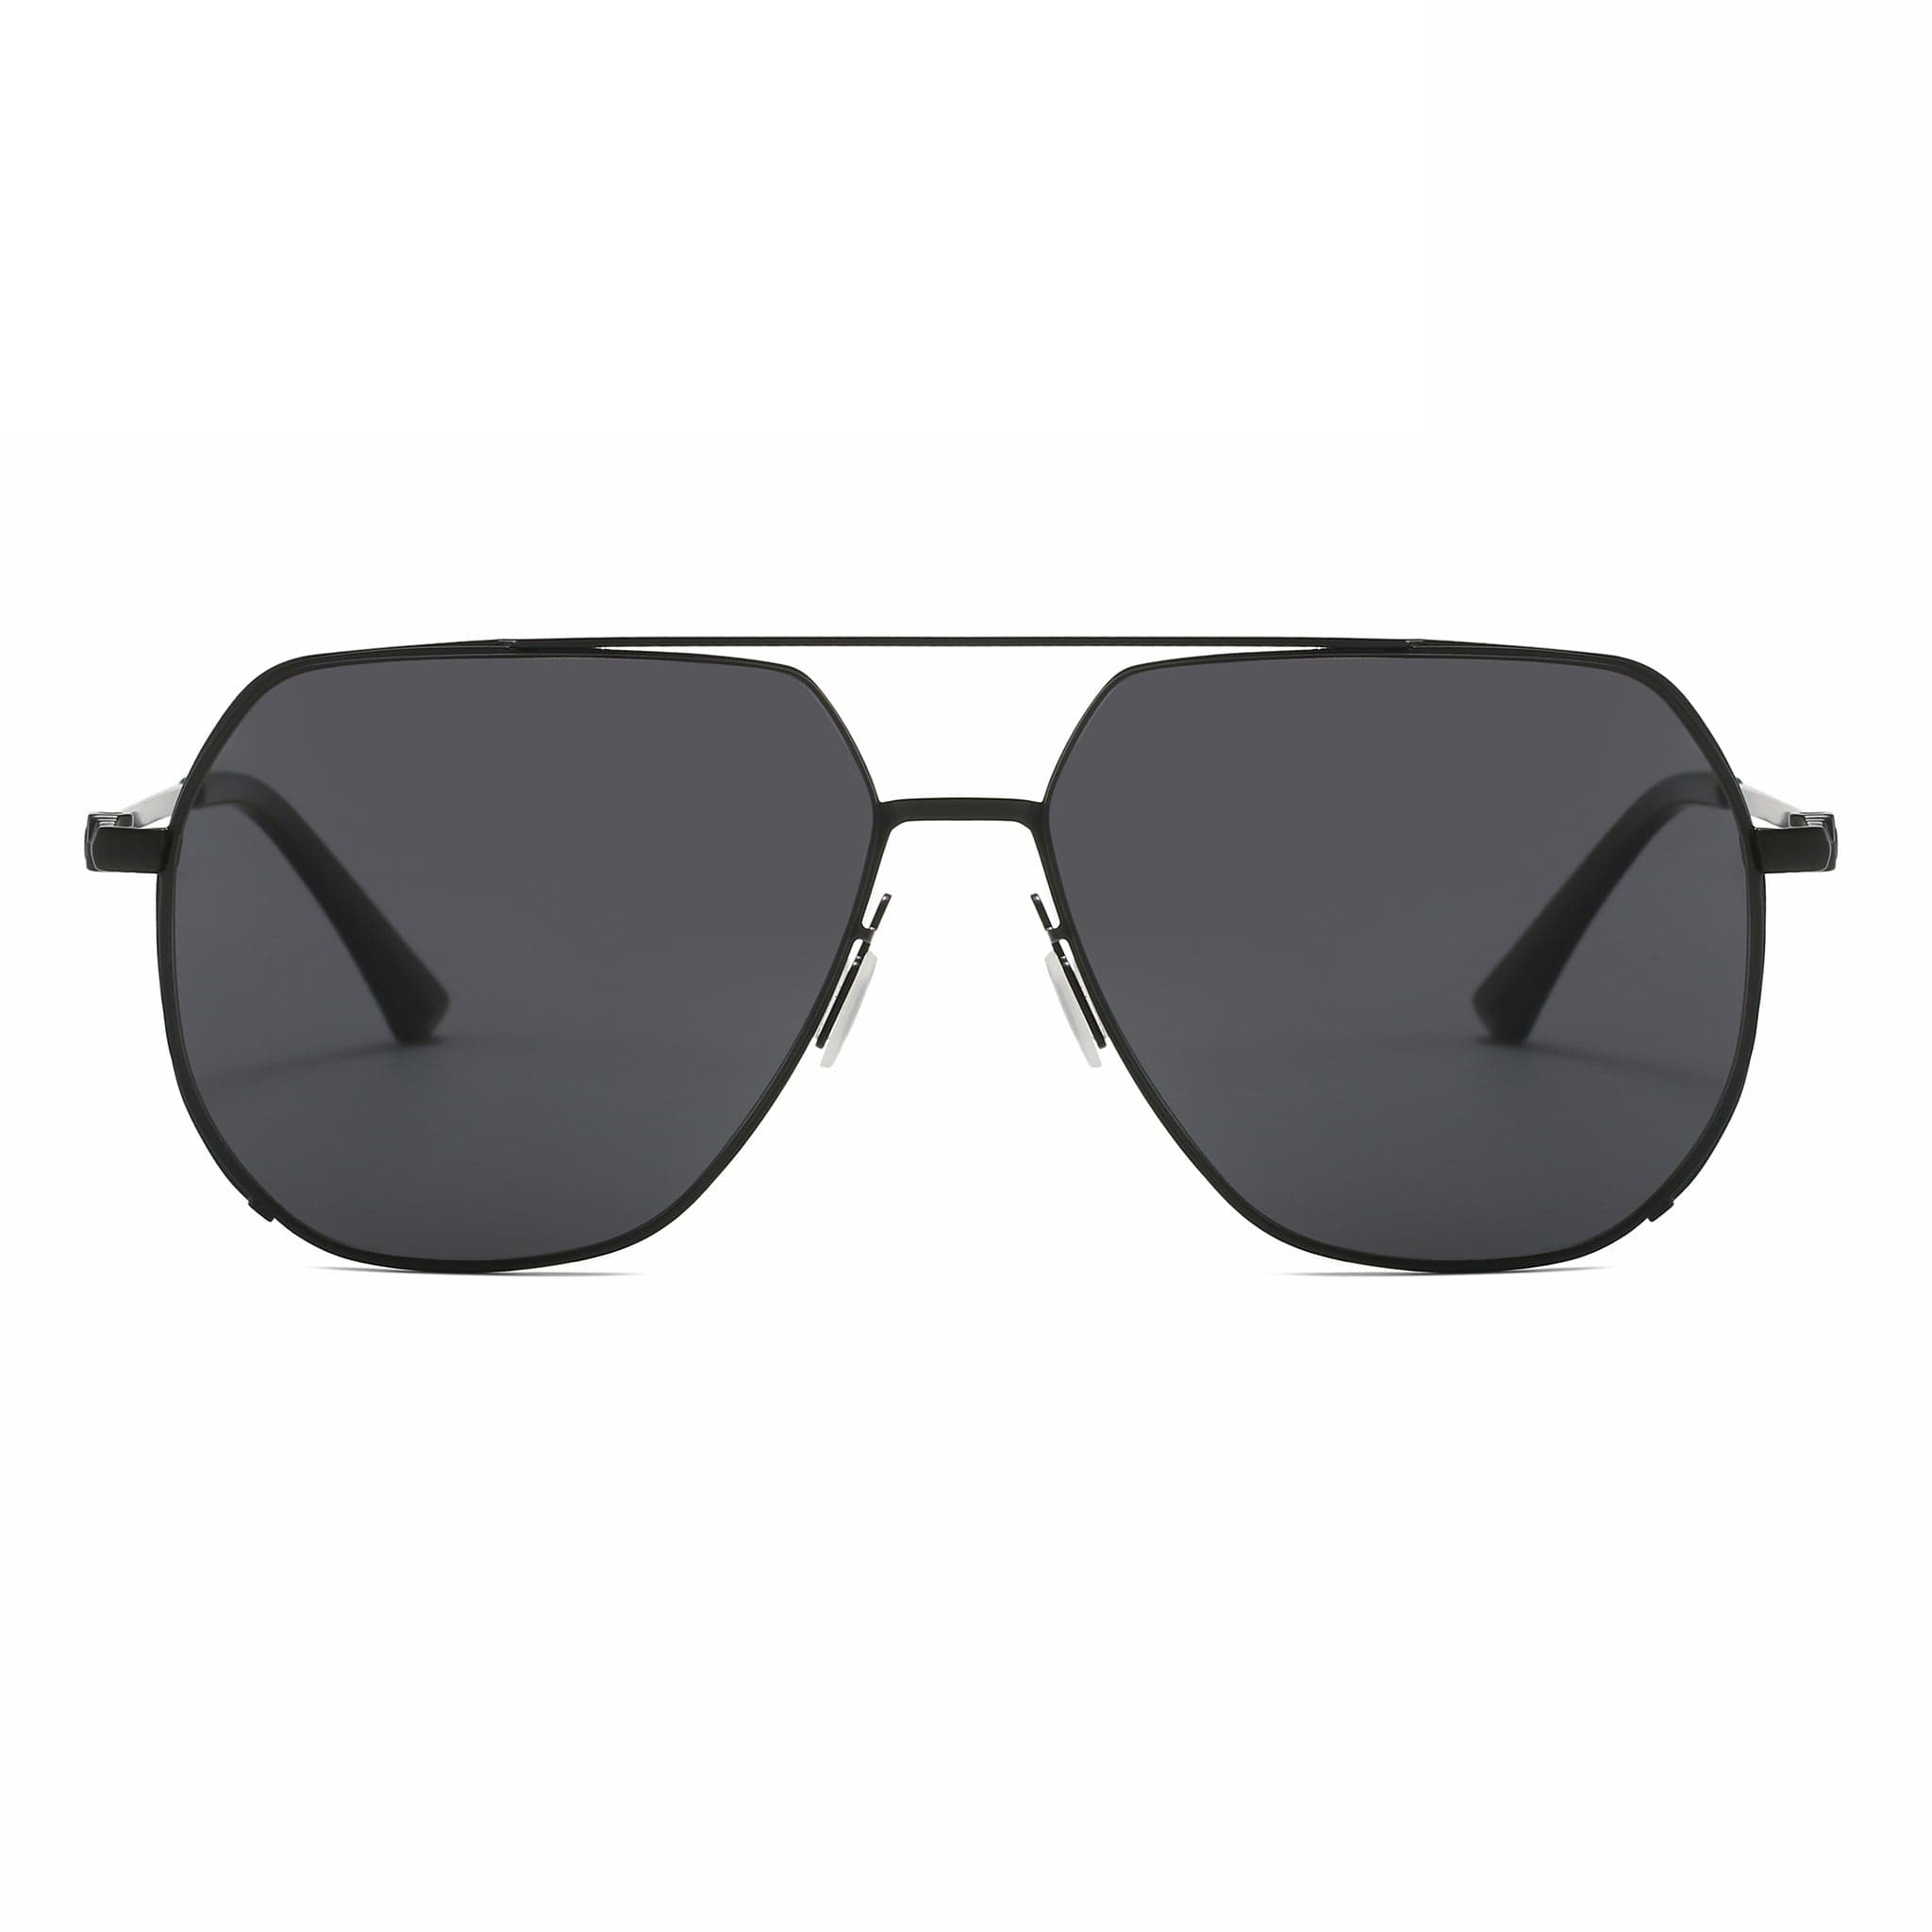 GIUSTIZIERI VECCHI Sunglasses Medium / Black Roma Aviator Uno